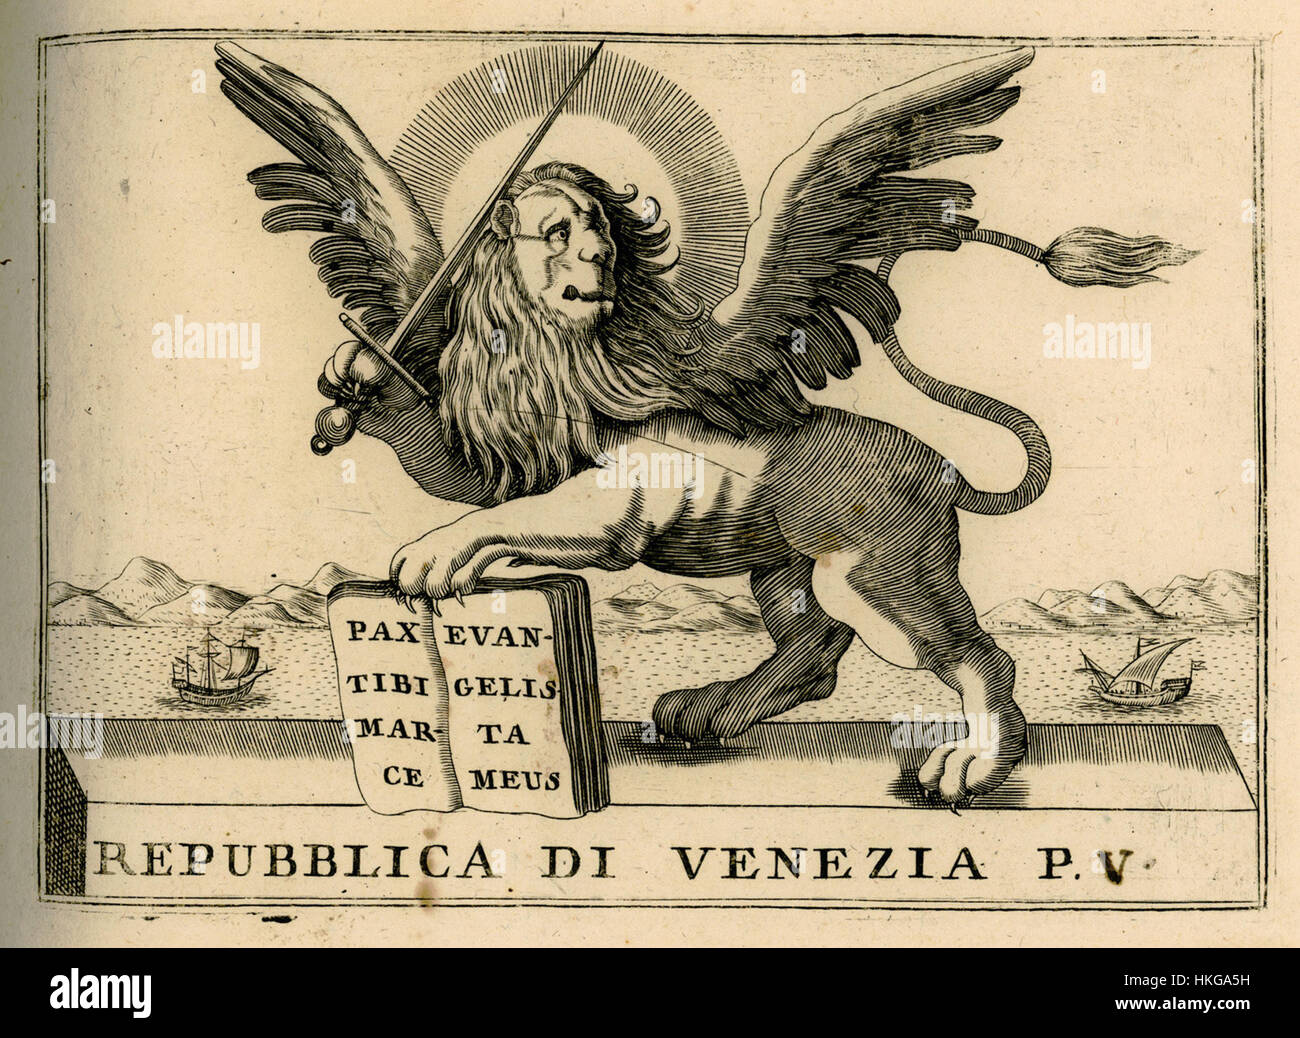 Repubblica di Venezia p V   Coronelli Vincenzo   1688 Stock Photo